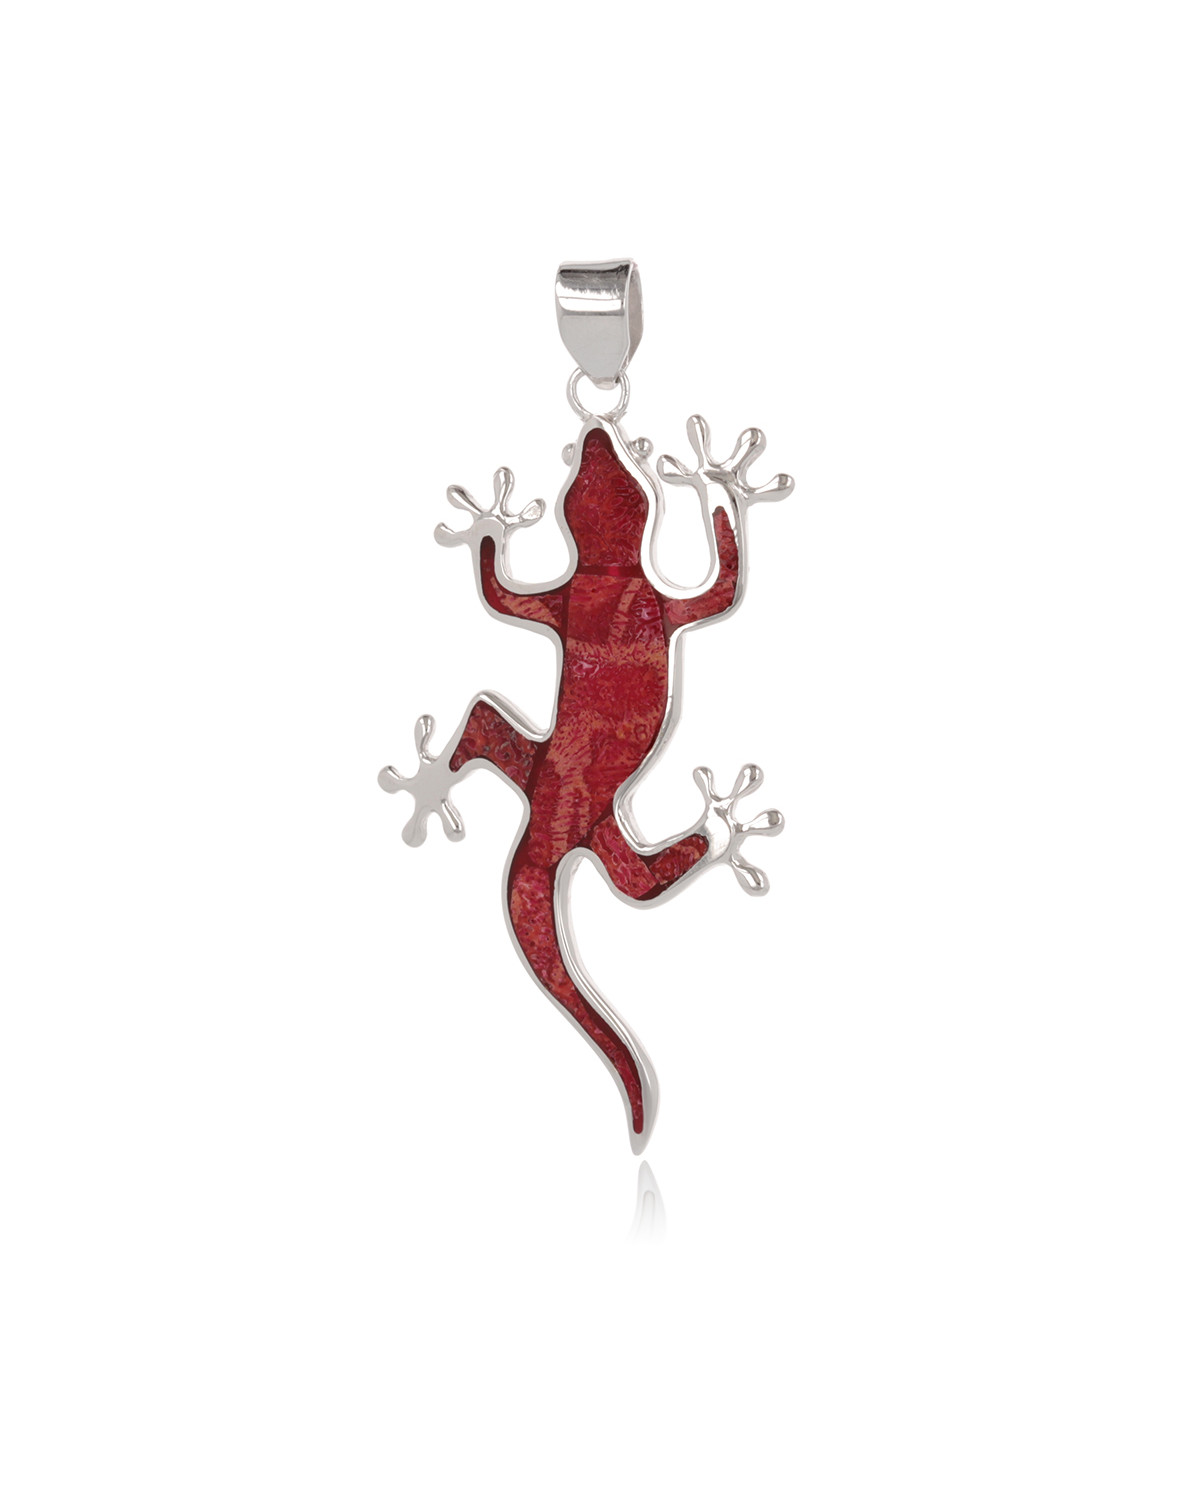 Idea de regalo Joyería Colgante de plata esterlina y facetado Piedra granate Color rojo Forma Libélula Mujer